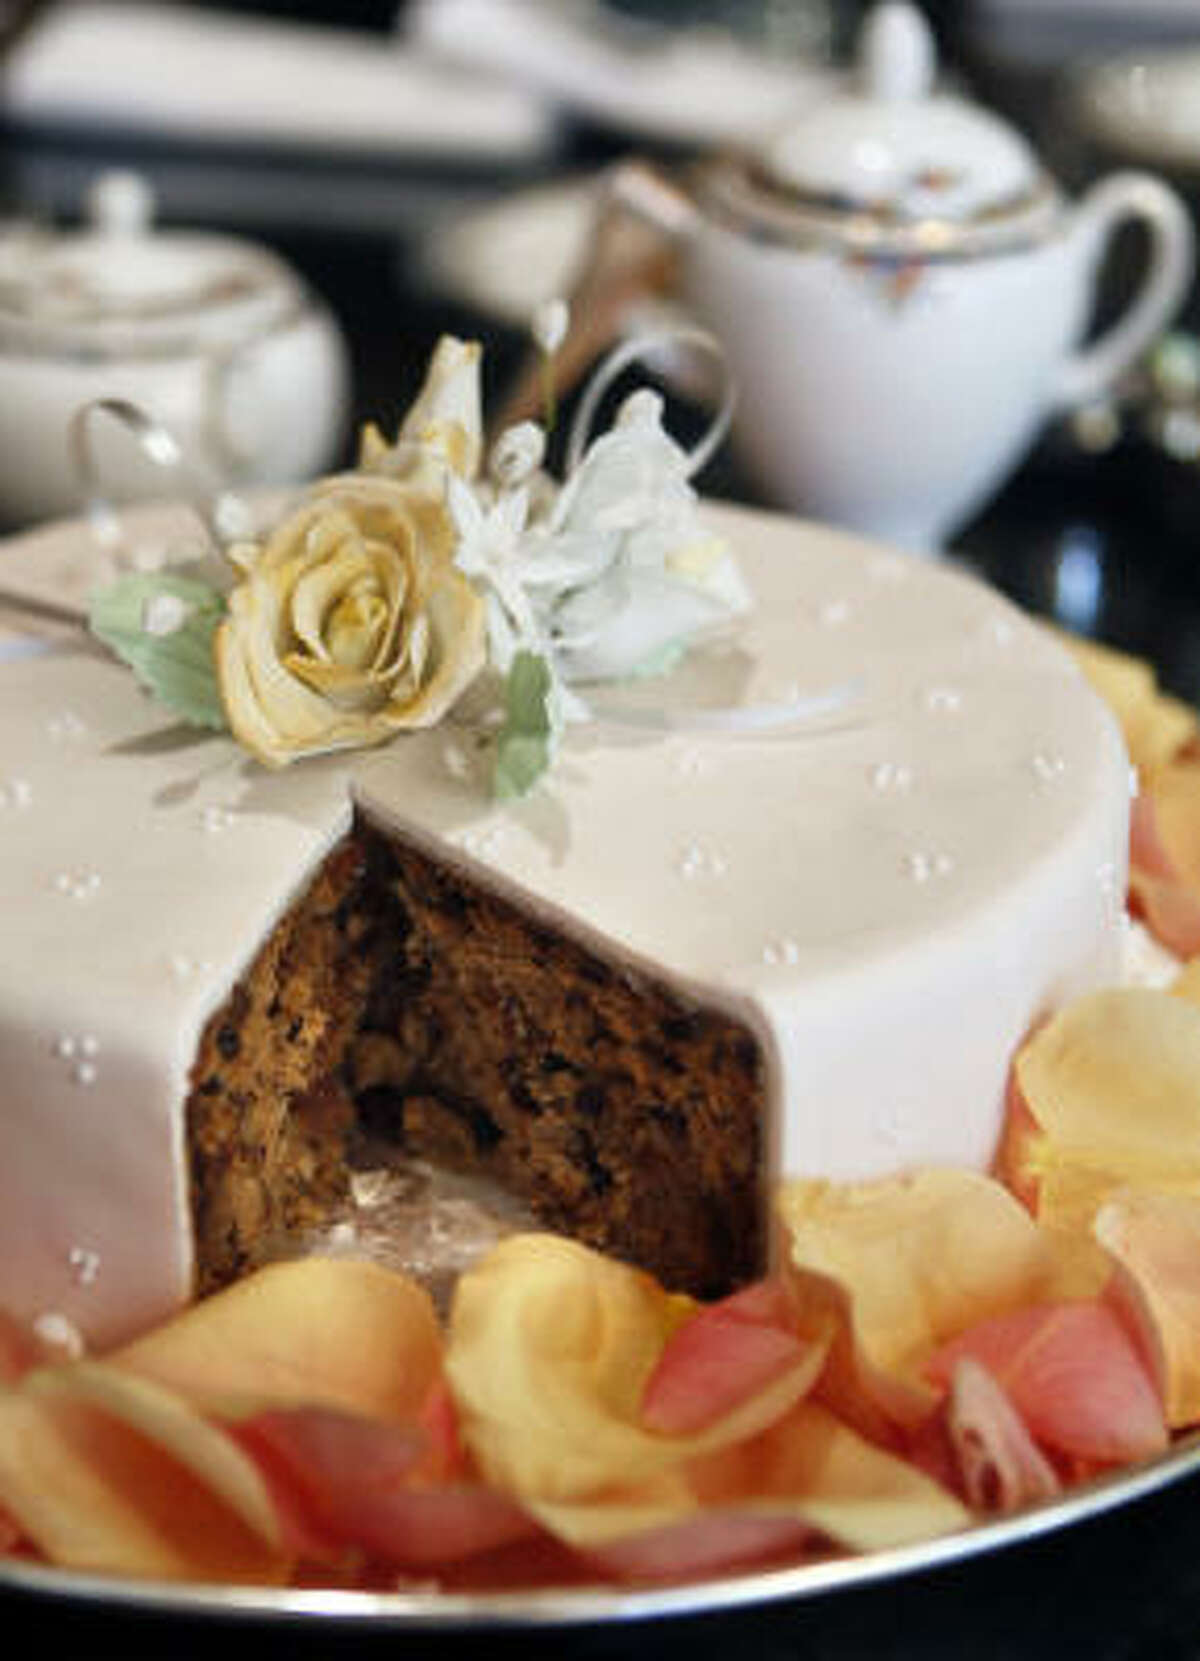 Royal wedding cake